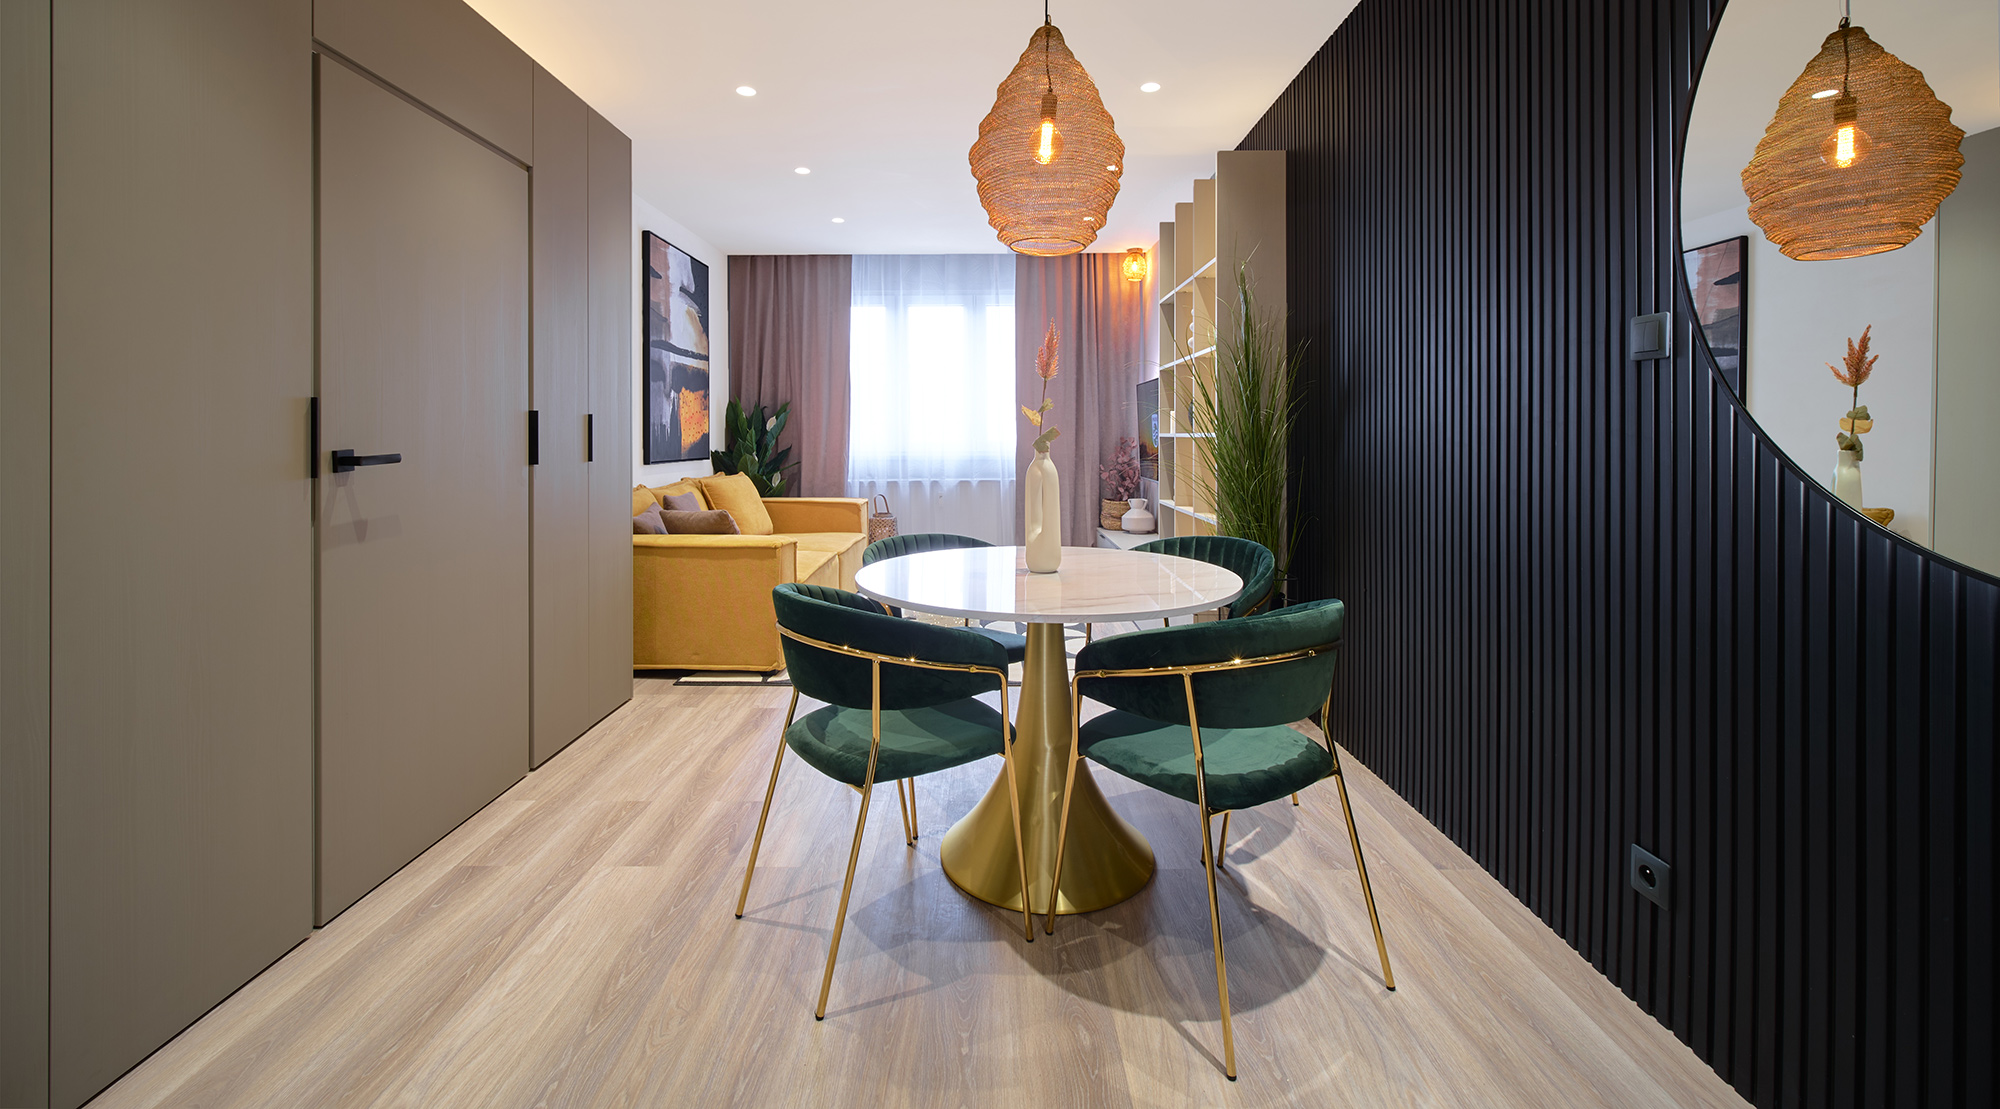 Štýlový dizajnový apartmán plný farieb v eklektickom štýle